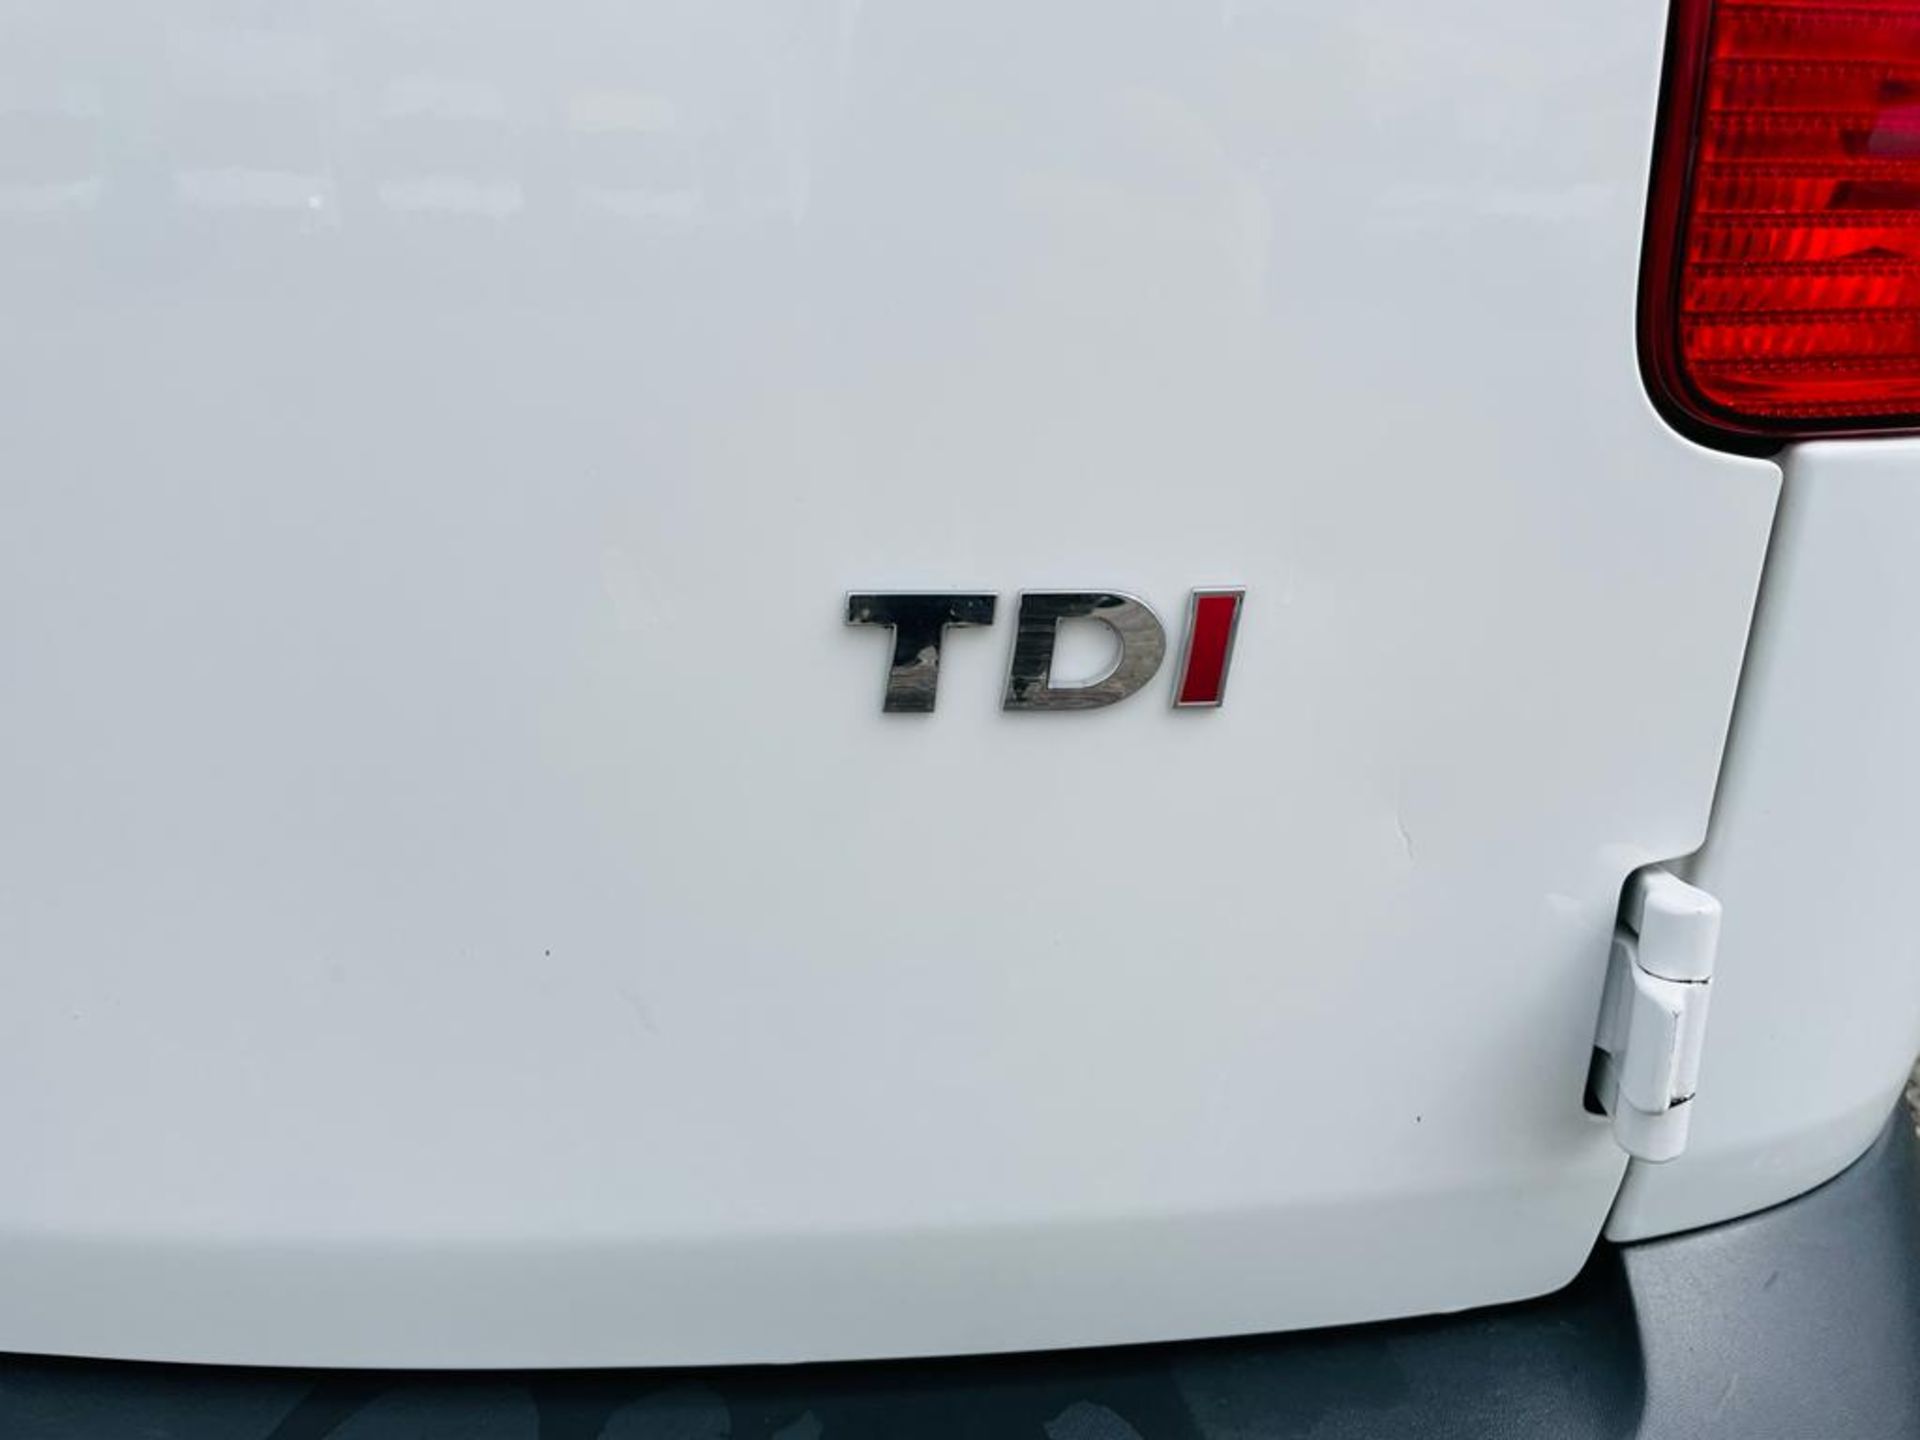 ** ON SALE ** Volkswagen Caddy C20 1.6 TDI StartLine 102 2015 '15 Reg' Panel Van - Very Economical - Image 15 of 27